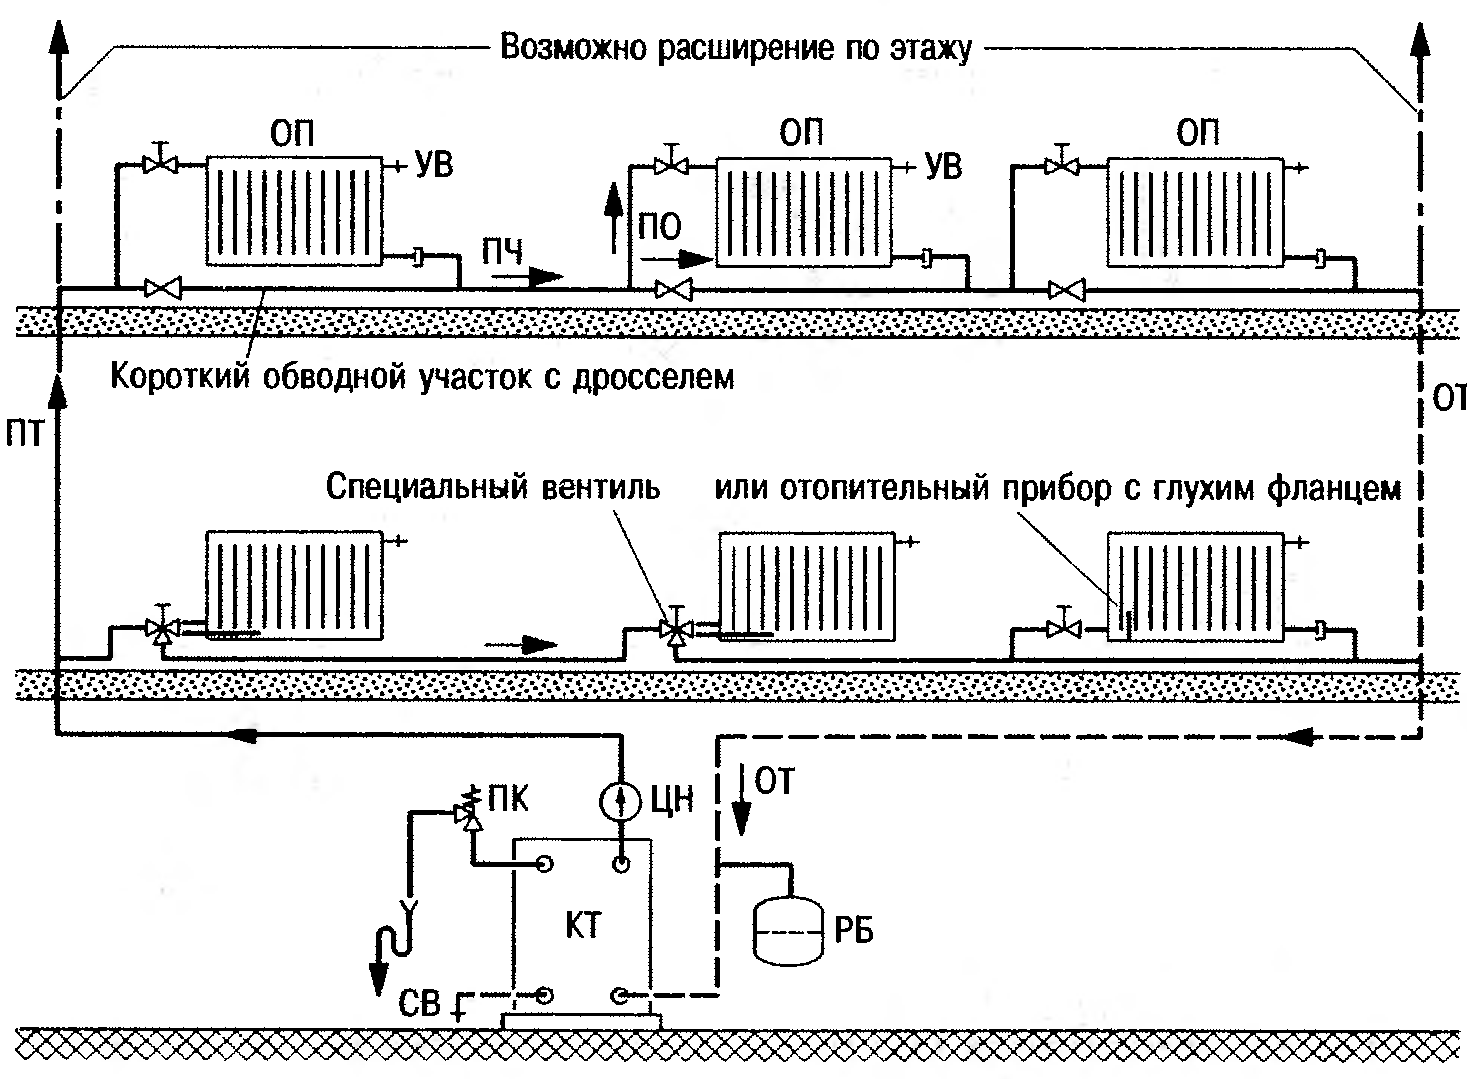 Система отопления ленинградка и ее разновидности